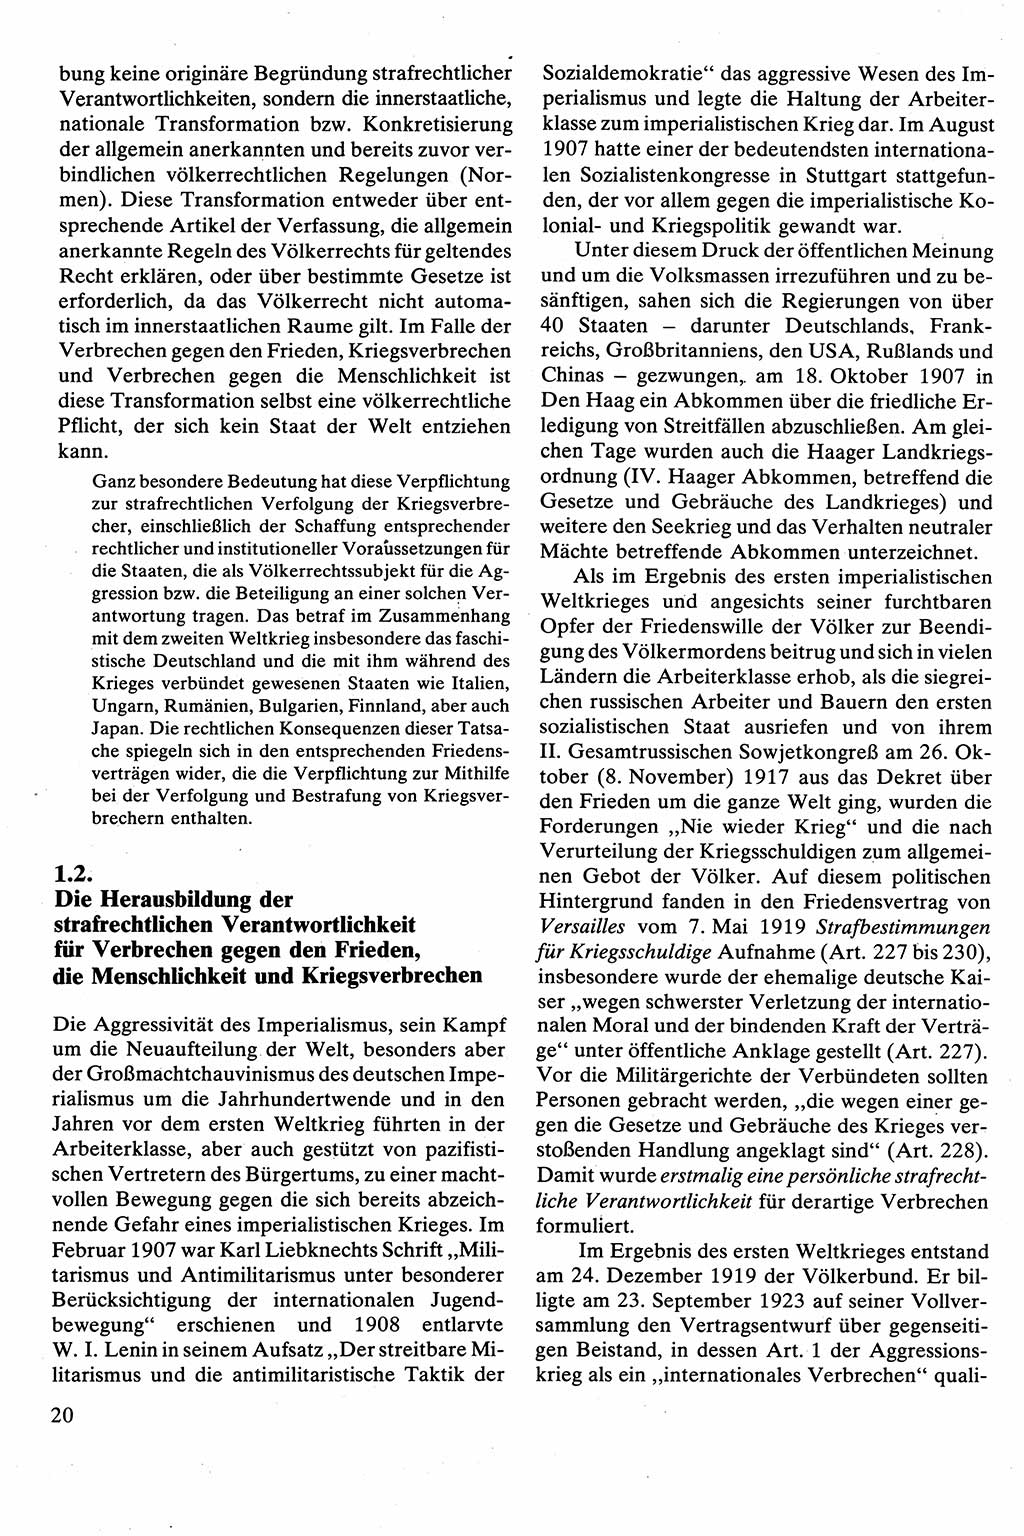 Strafrecht [Deutsche Demokratische Republik (DDR)], Besonderer Teil, Lehrbuch 1981, Seite 20 (Strafr. DDR BT Lb. 1981, S. 20)